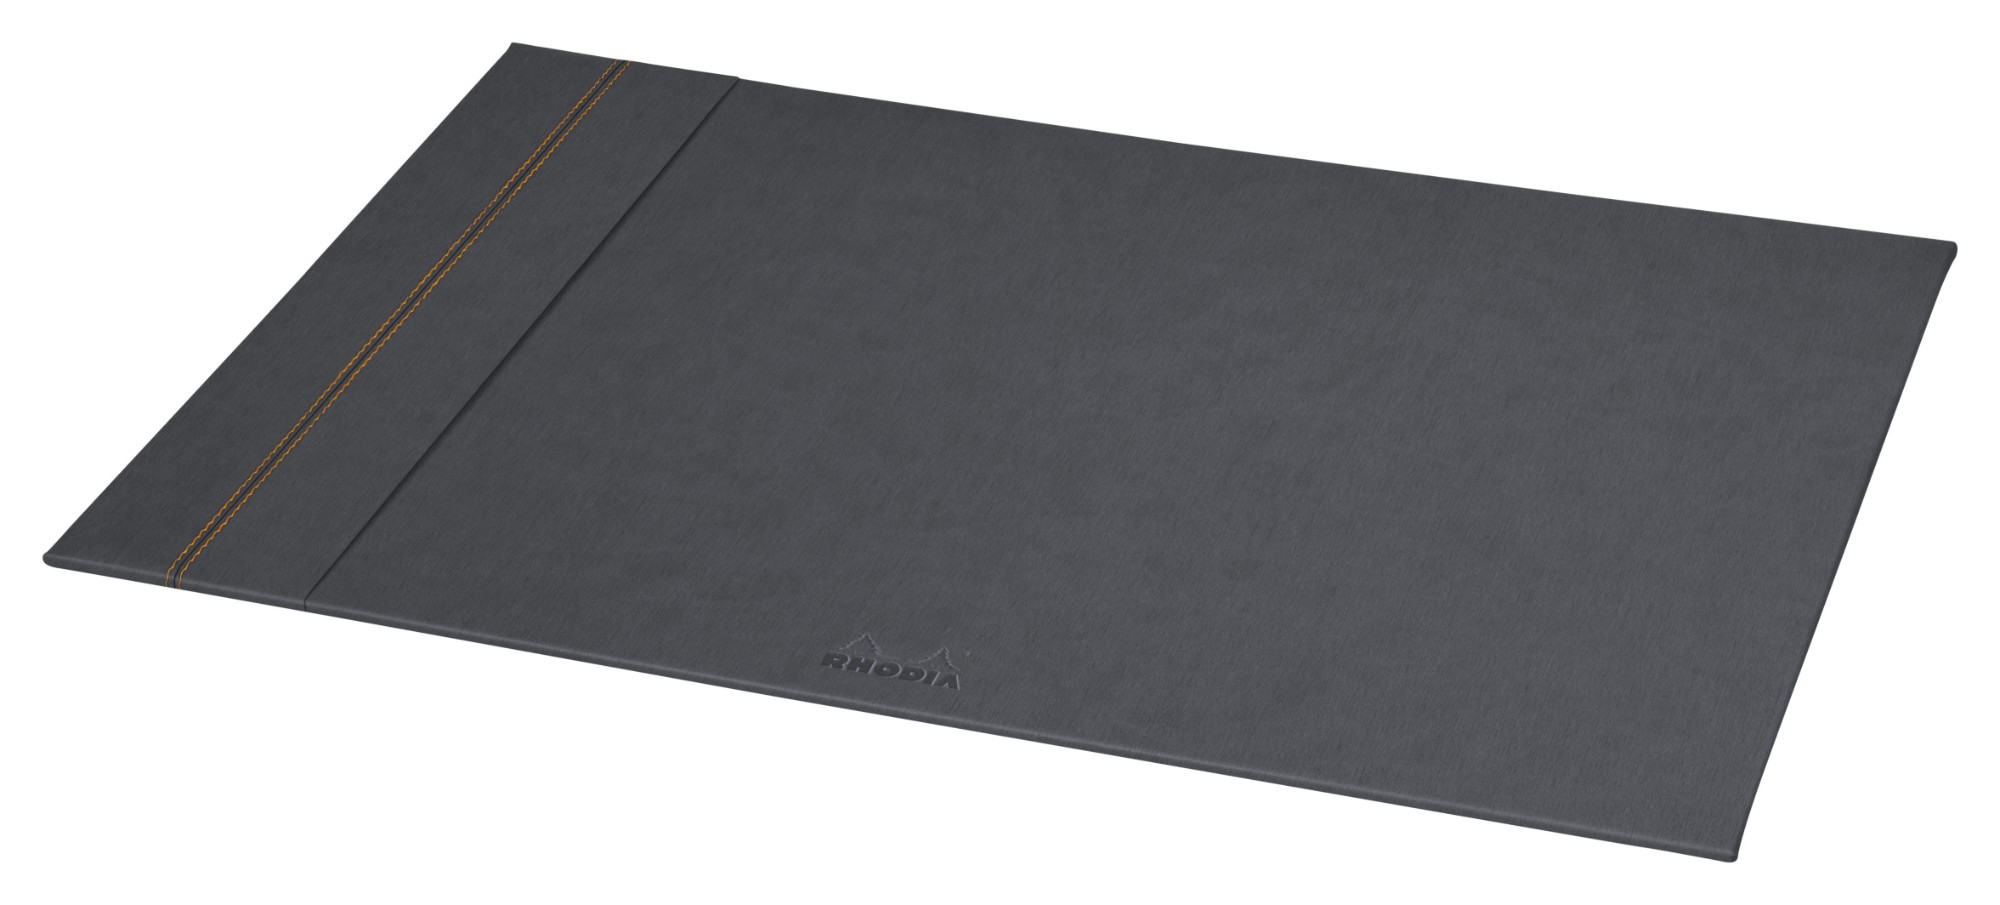 Rhodia rama desk pad 60x40cm Titanium